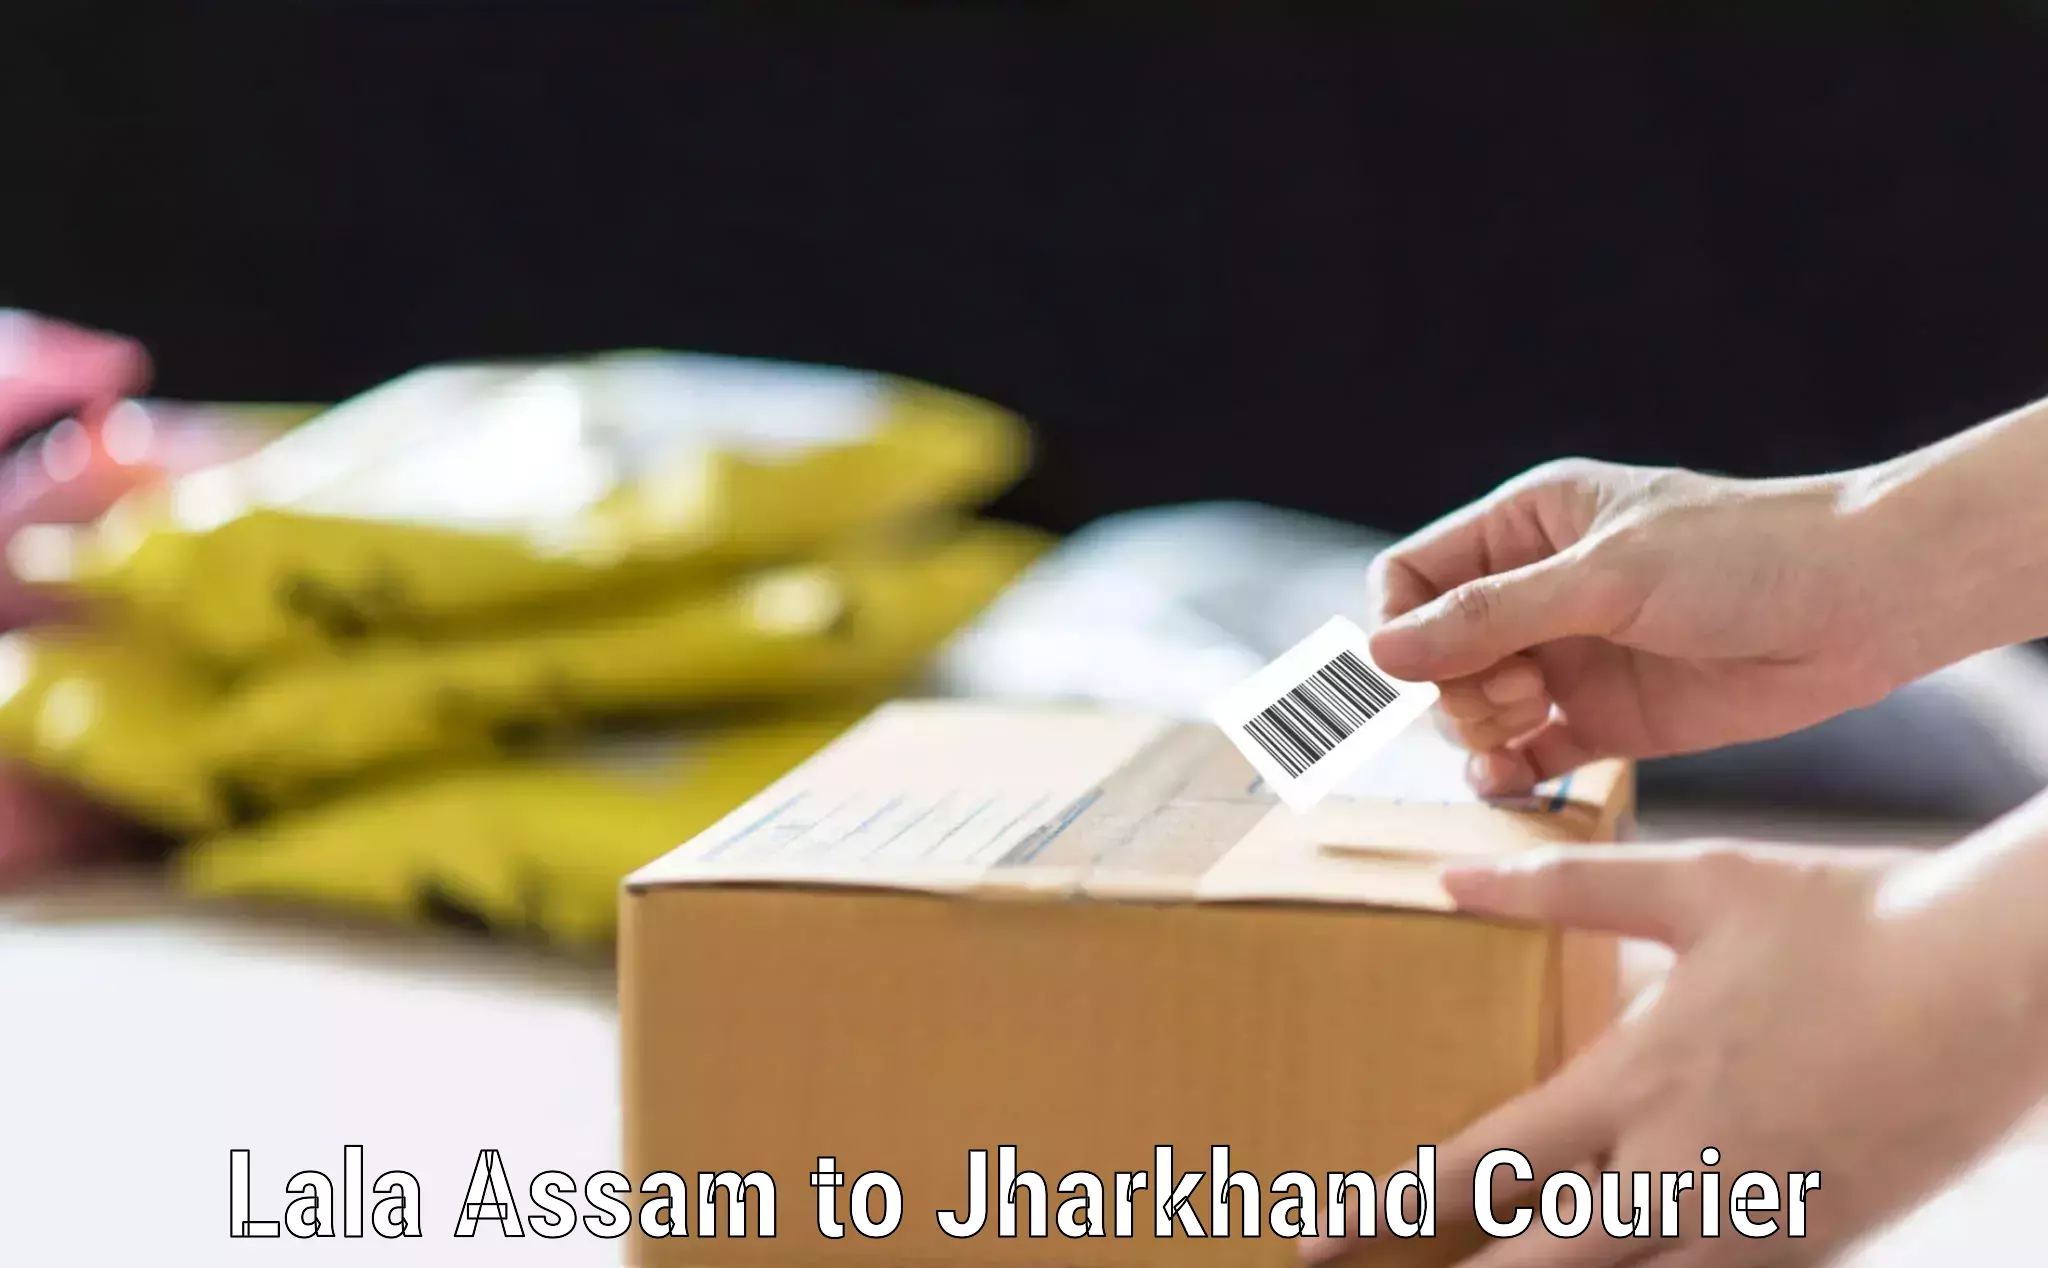 Hassle-free luggage shipping Lala Assam to Bokaro